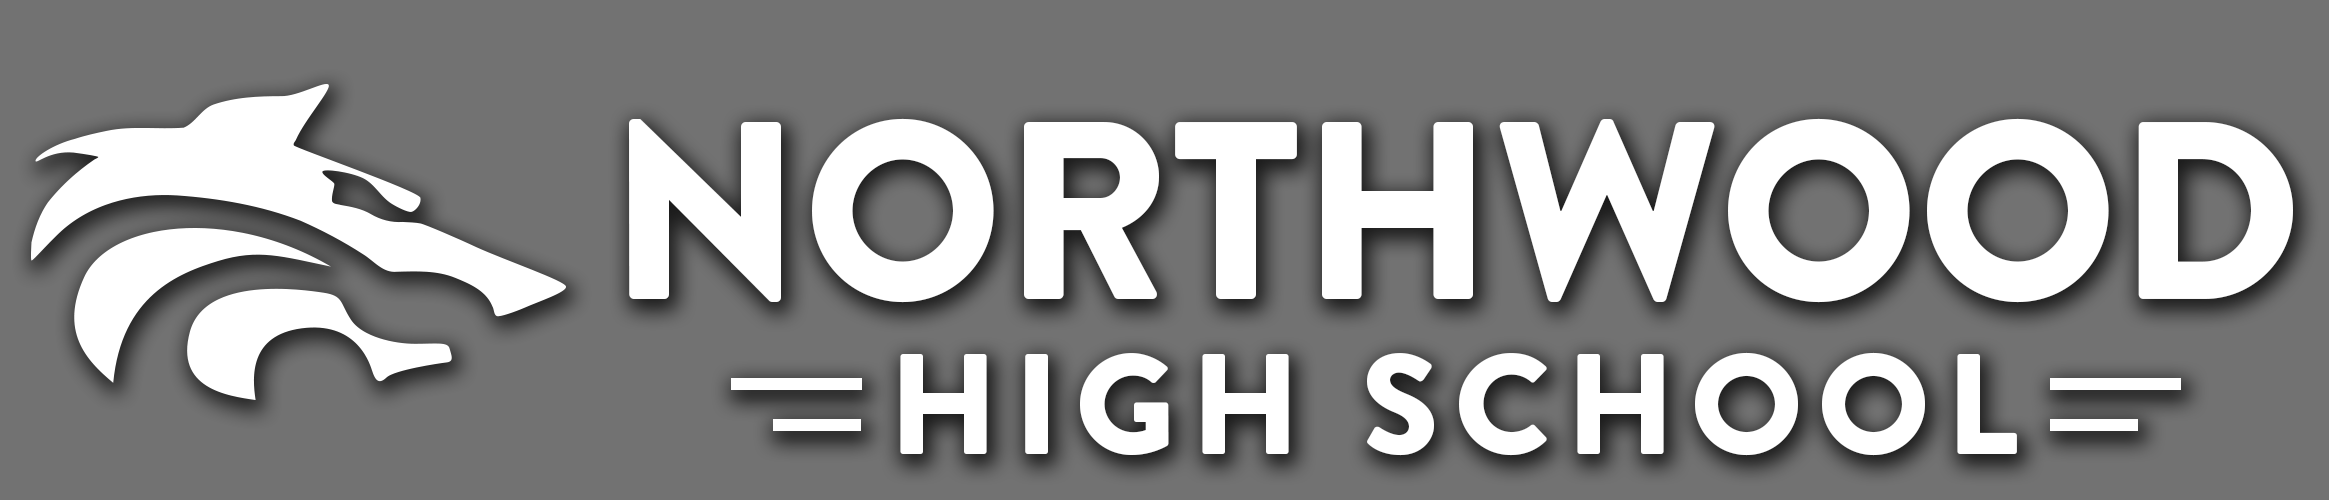 ED - Northwood High School.png